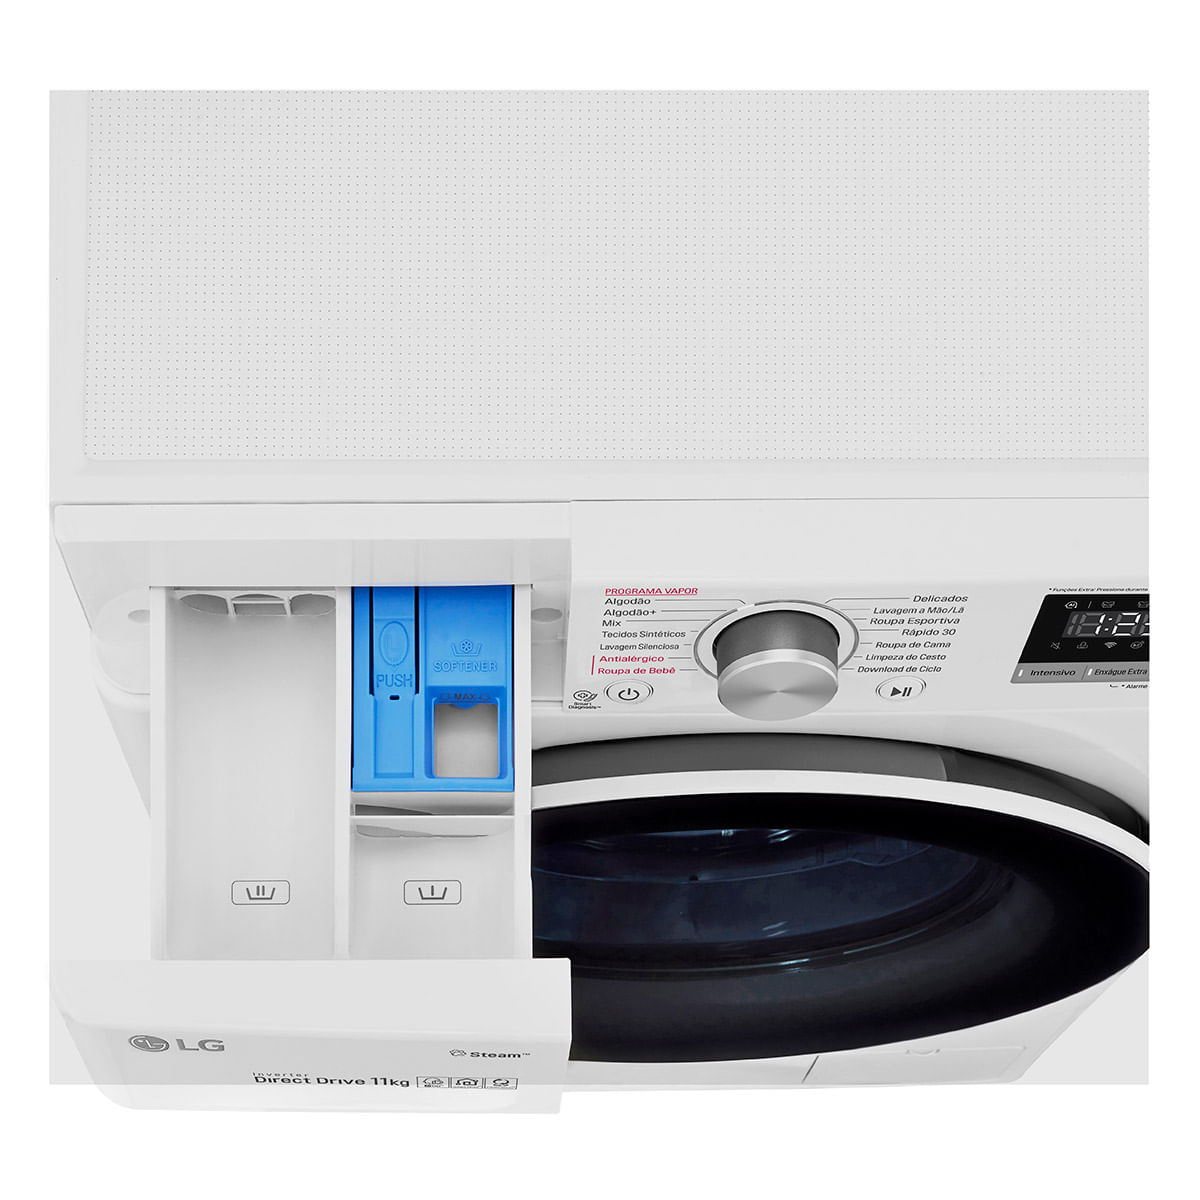 lavadora-de-roupa-smart-lg-vc5-11kg-com-inteligencia-artificial-aidd-fv3011wg4-branca-110v-4.jpg